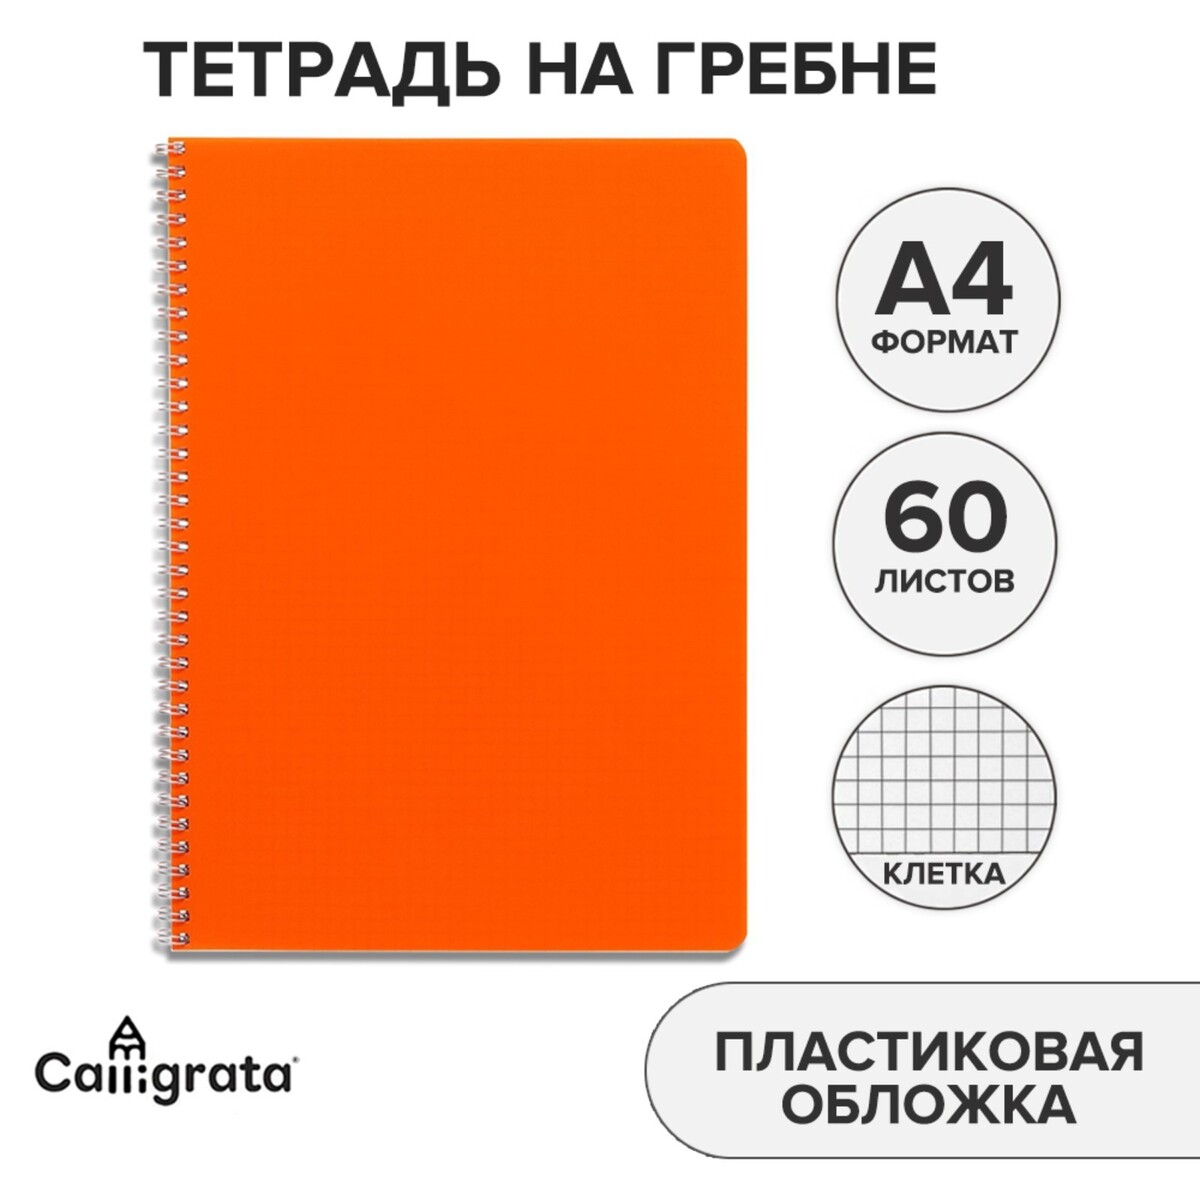 Тетрадь на гребне a4 60 листов в клетку calligrata оранжевая, пластиковая обложка, блок офсет